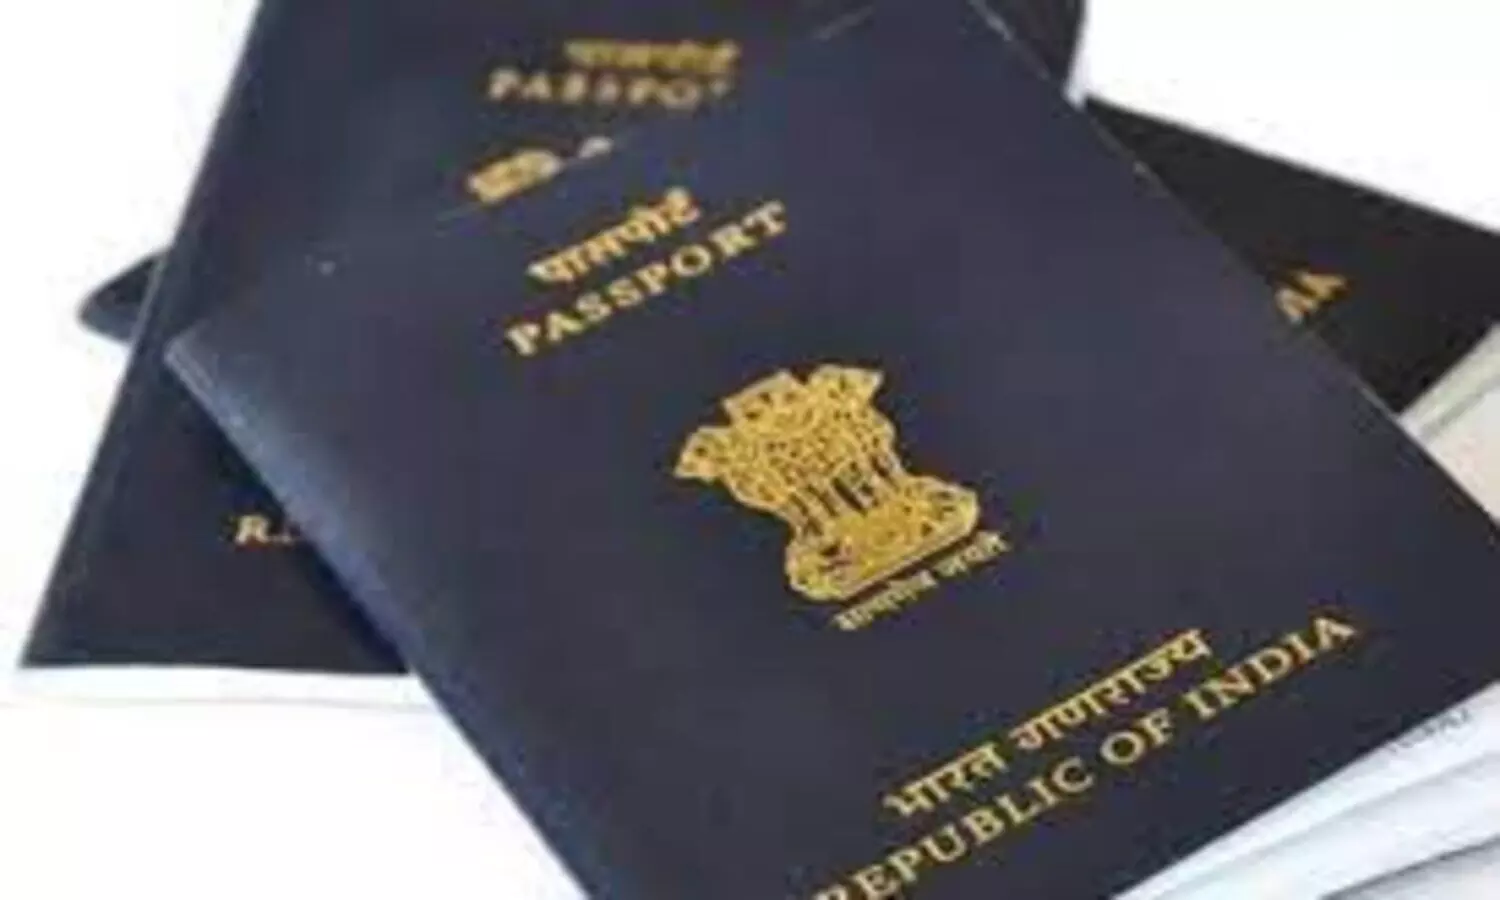 How to Apply for Passport: घर बैठे पासपोर्ट के लिए करें आवेदन, ये तरीका है बेहद आसान